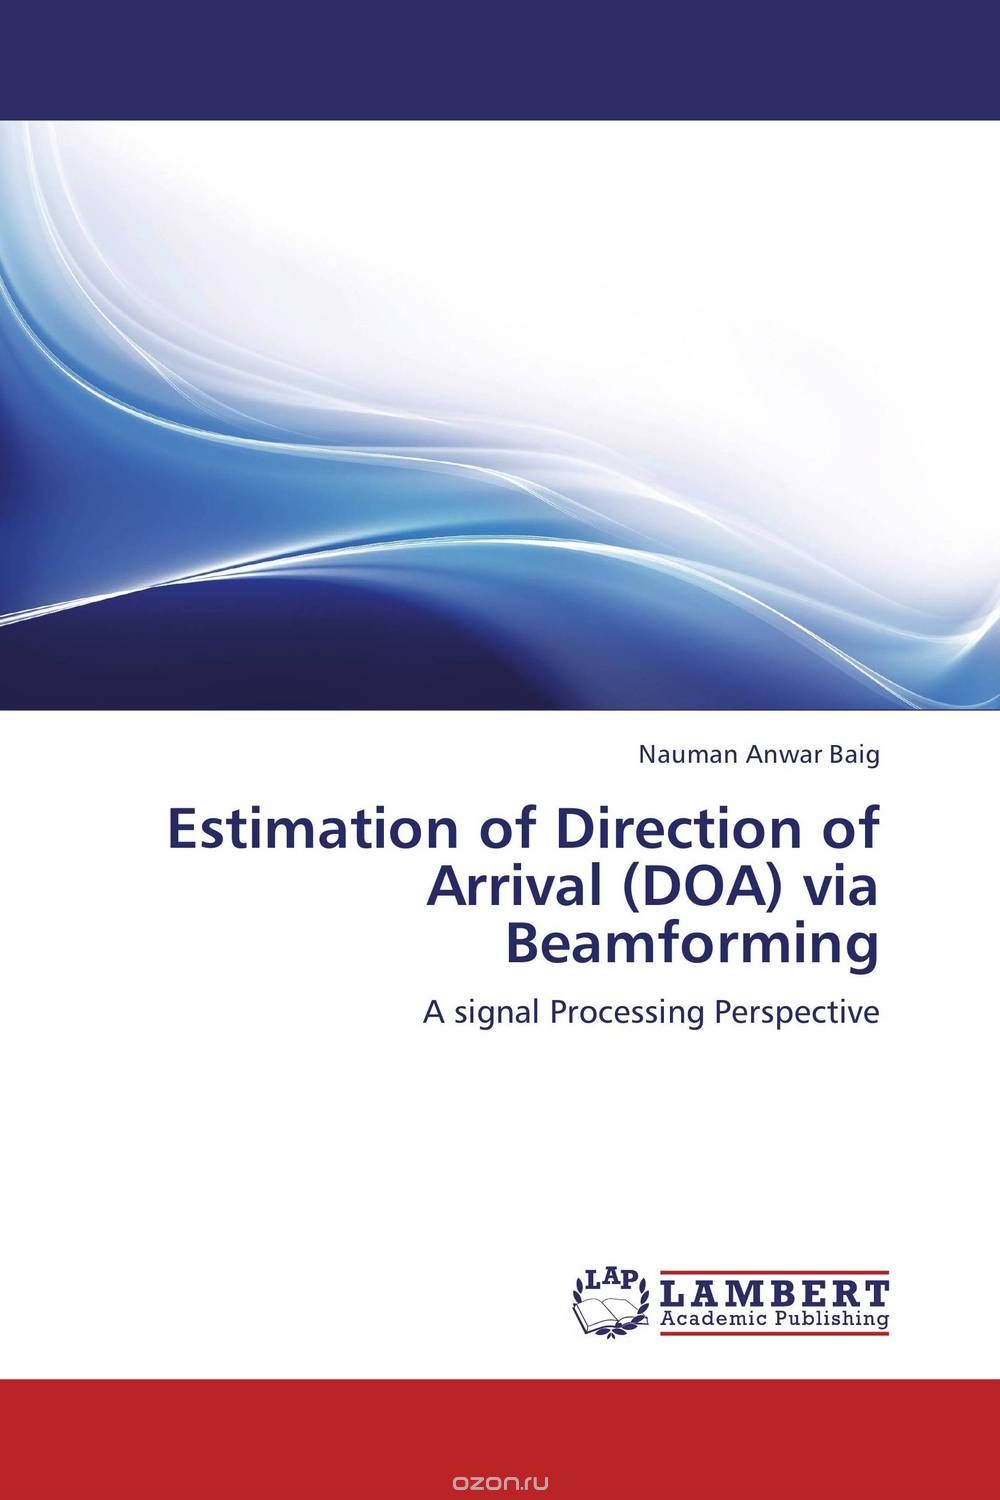 Скачать книгу "Estimation of Direction of Arrival (DOA) via Beamforming"